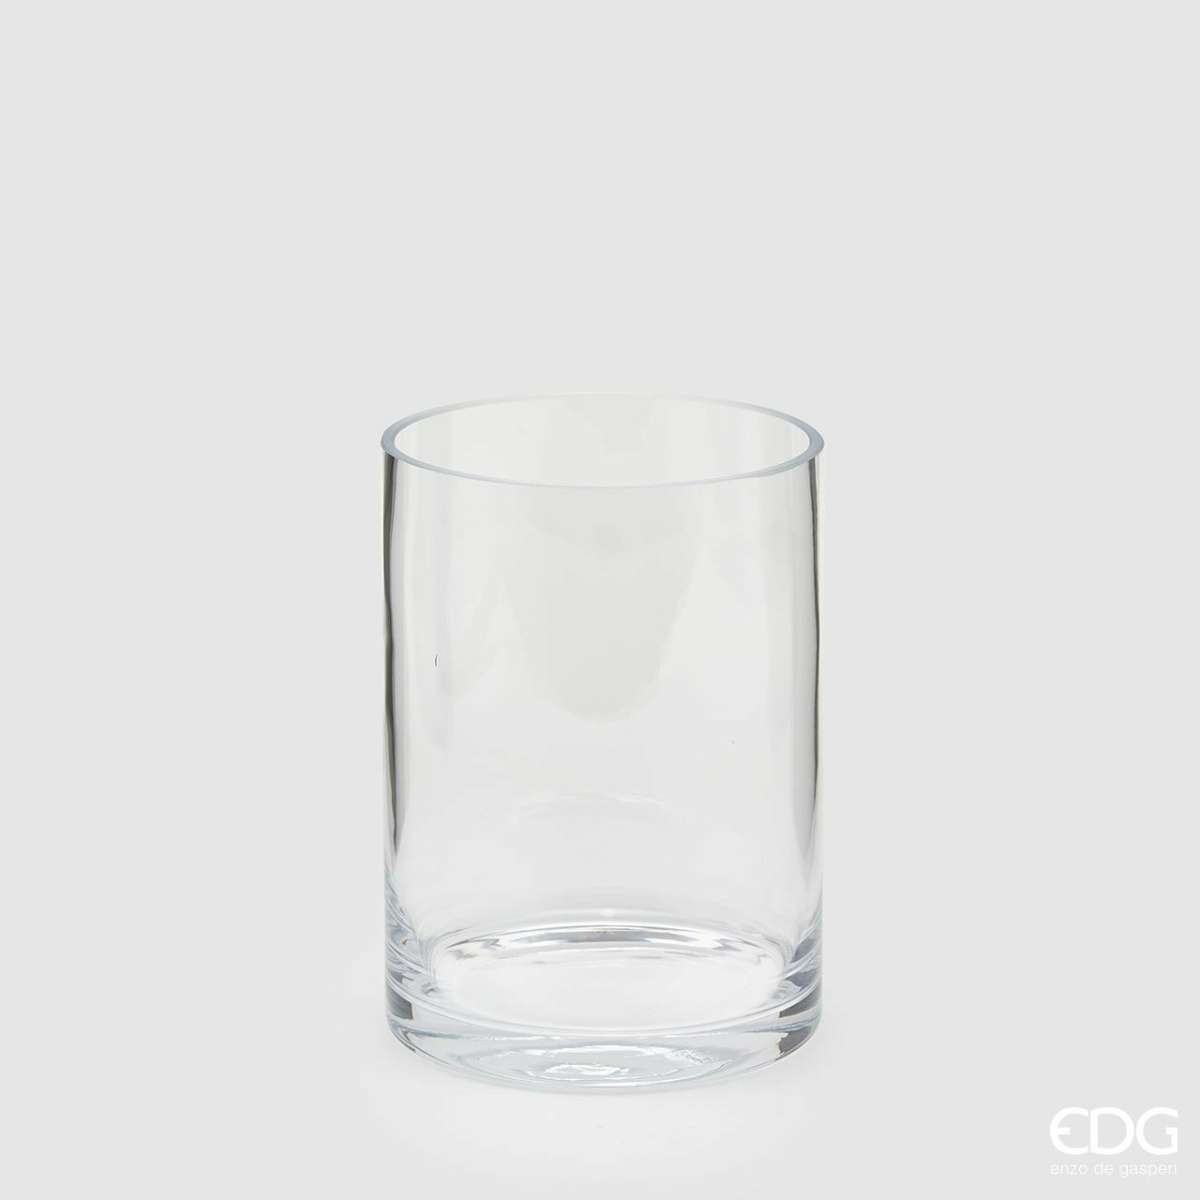 Immagine del prodotto Vaso Cilindro in Vetro trasparente h20xø15 cm | EDG Enzo De Gasperi